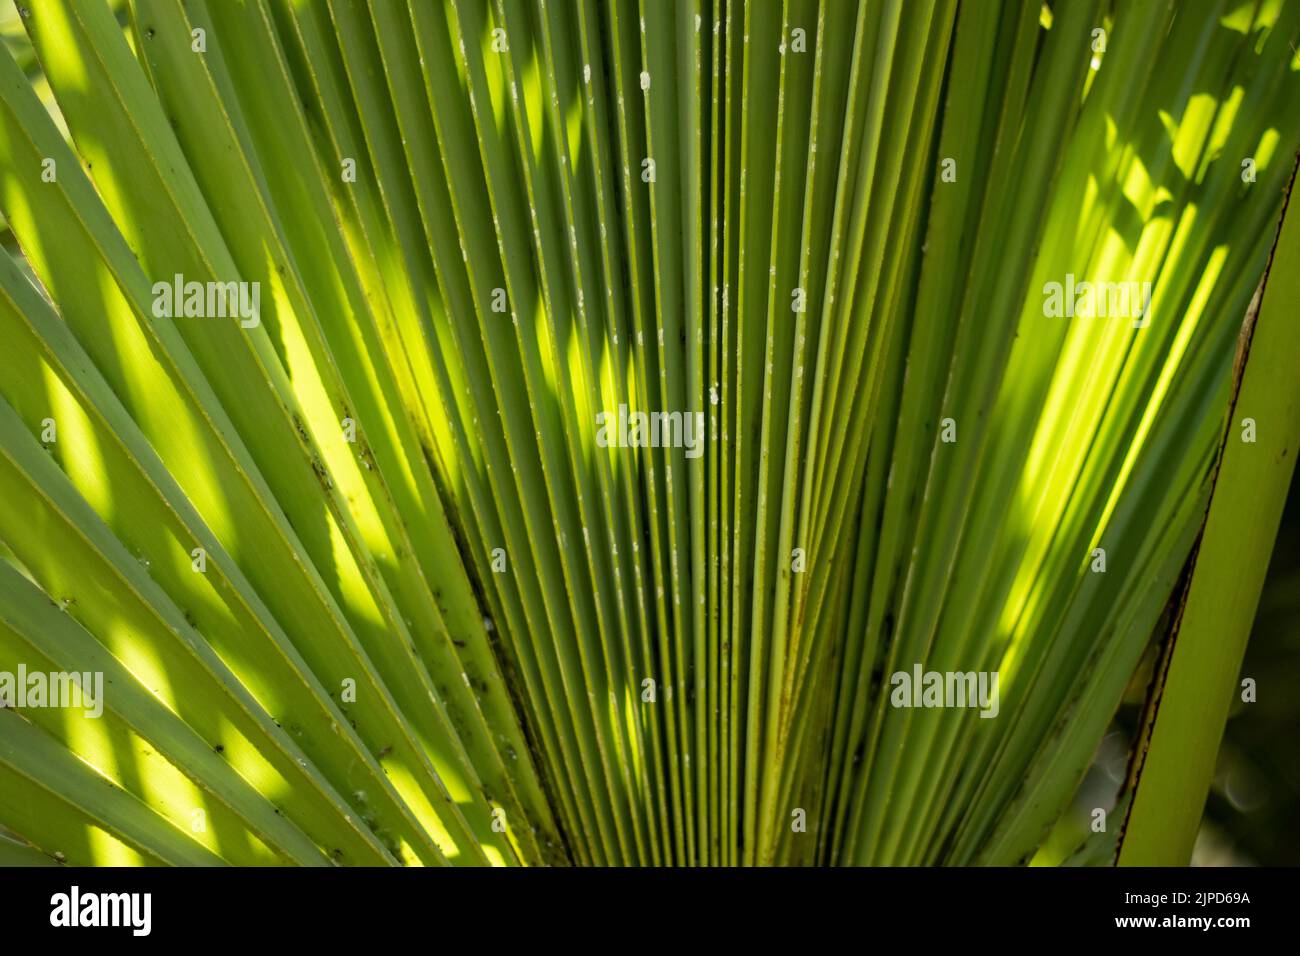 Allgemein bekannt als Doppelpalme, palmyra-Palme, Tala-Palme, Toddy-Palme oder Weinpalme. Sein wissenschaftlicher Name ist Borassus flabellifer. Es gehört zu Arecaceae f Stockfoto